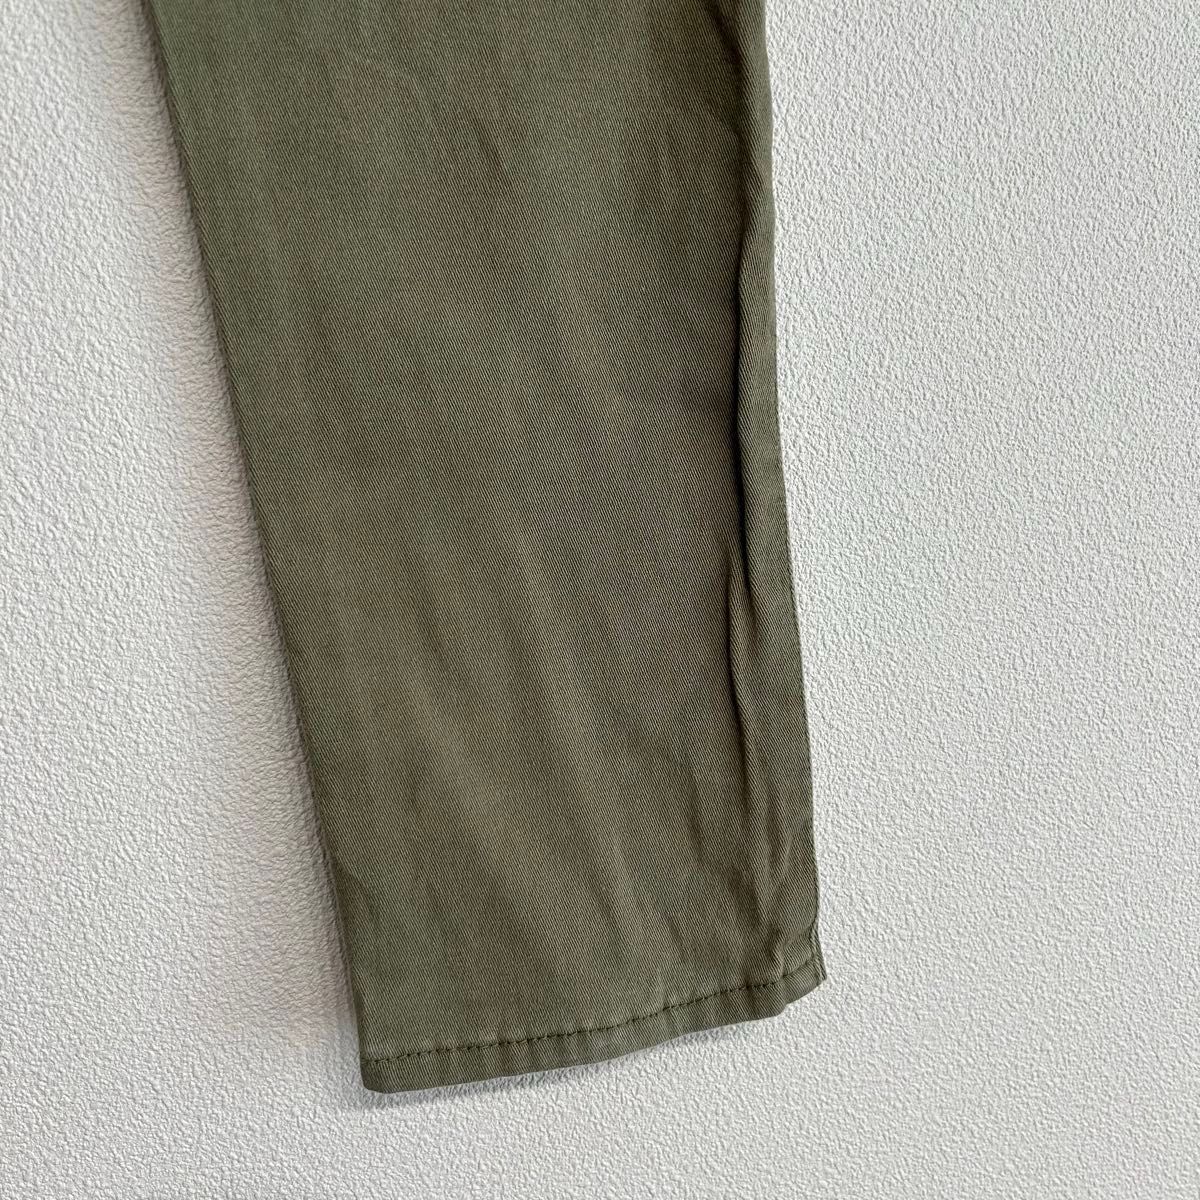 【yomi様おまとめ3点】120cmBACK&FORTH(バックアンドフォース) 長ズボン 綿パンツ 緑カーキー色 男の子 キッズ